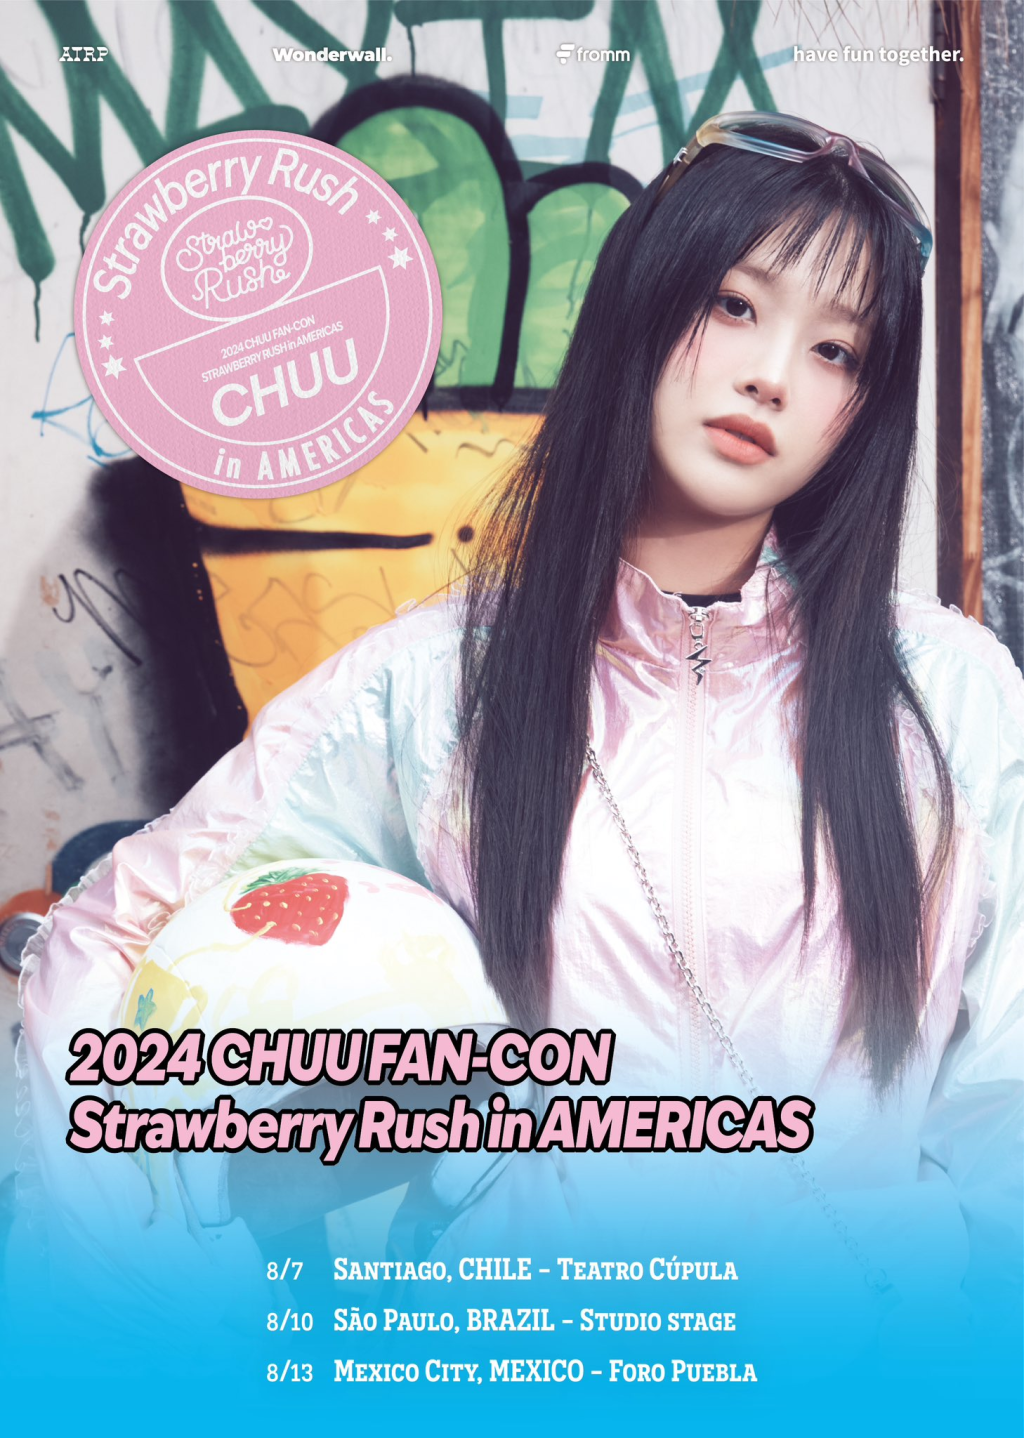 Chuu confirma show em São Paulo com a FAN-CON [Strawberry Rush]